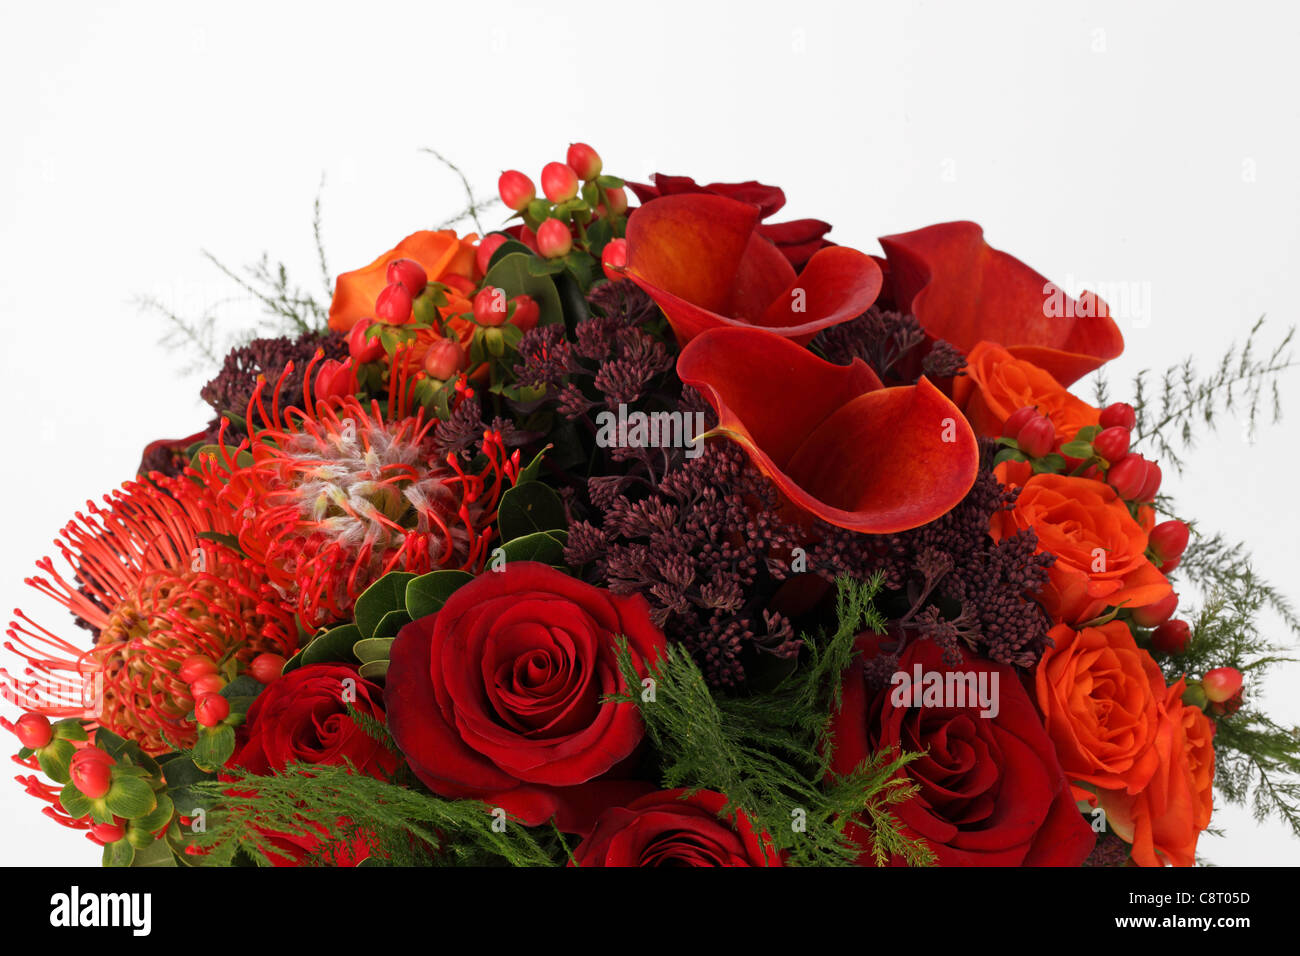 Un gros plan d'un bouquet de fleurs colorées. Roses Orange & rouge, rouge, rouge callas proteas, pulvérisations pourpre inconnu Banque D'Images